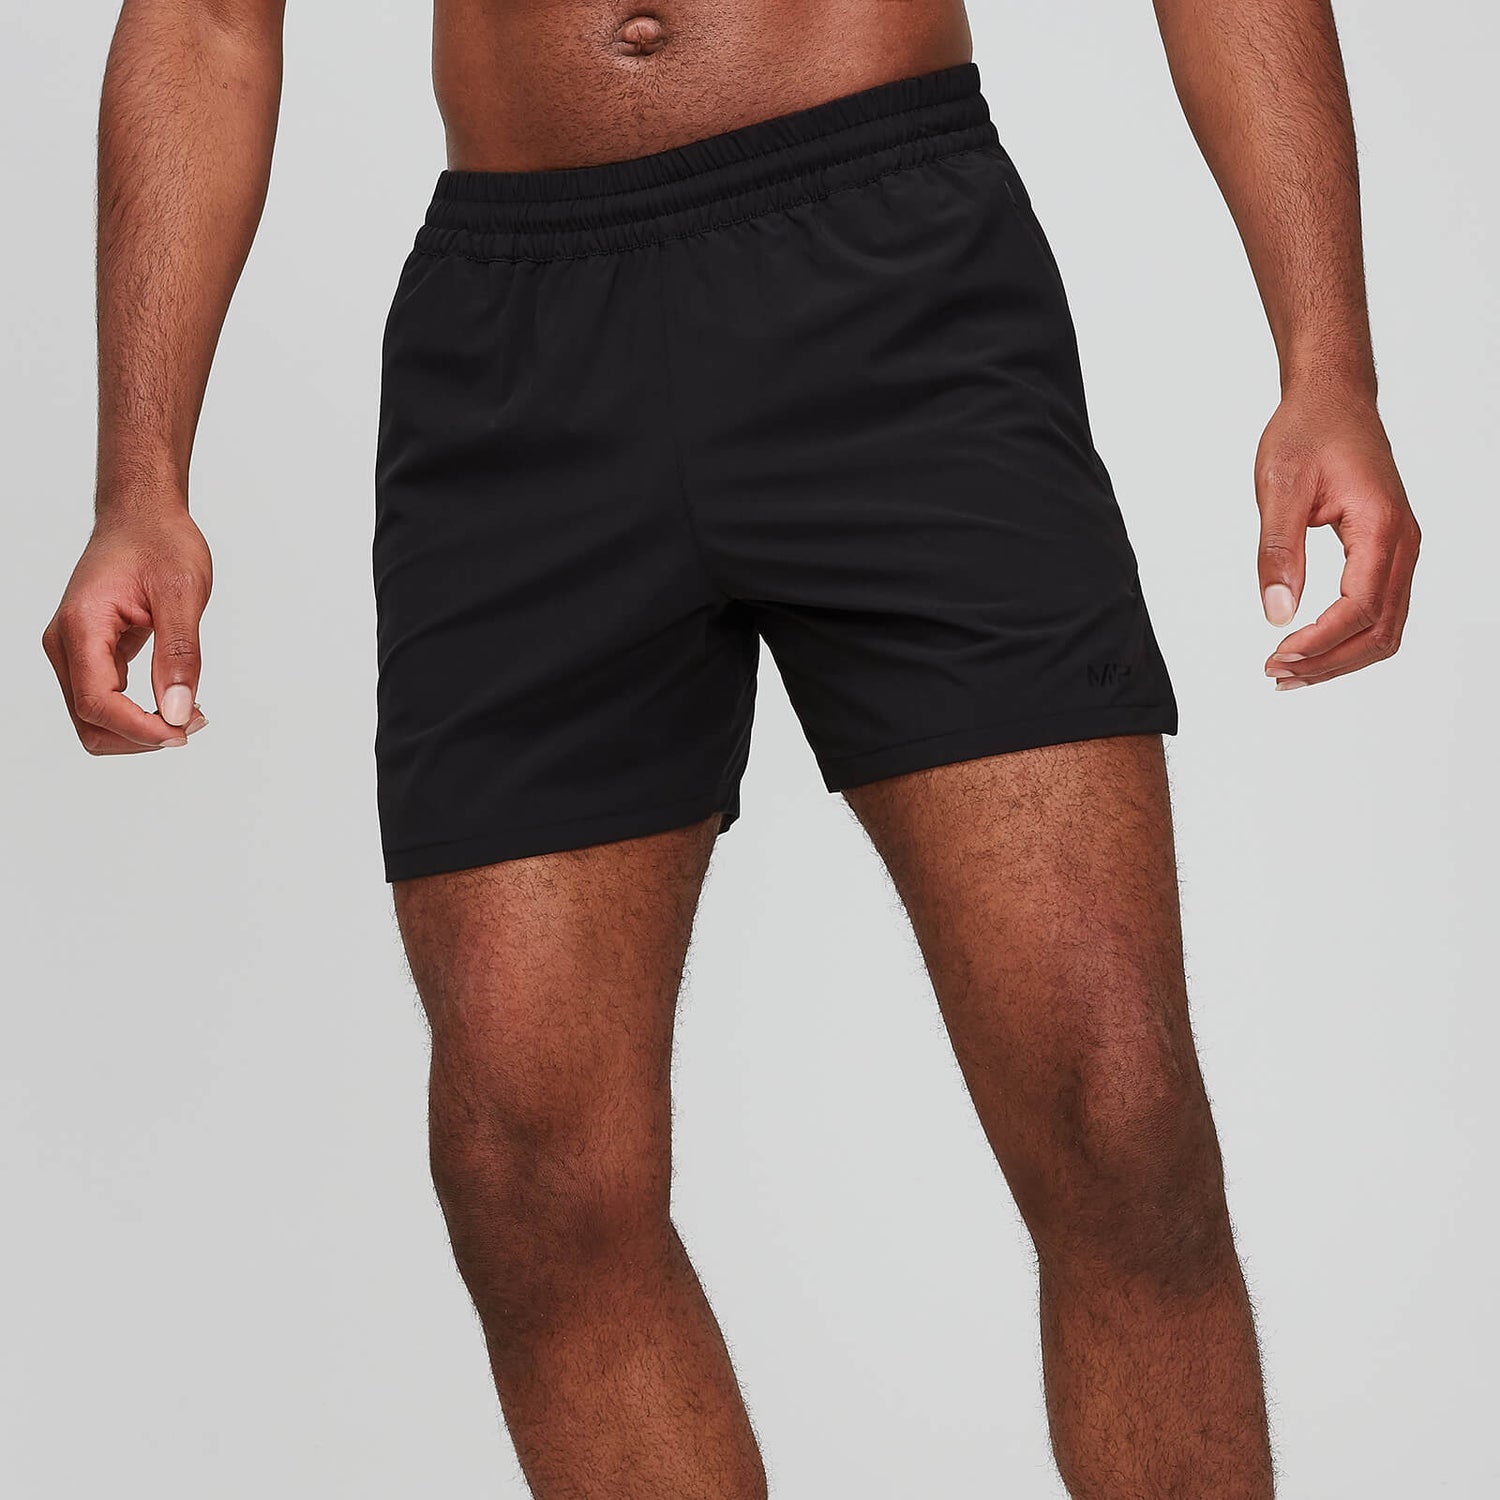 Buy Men's Sprint 5 Inch Shorts | Black | MYPROTEINâ¢